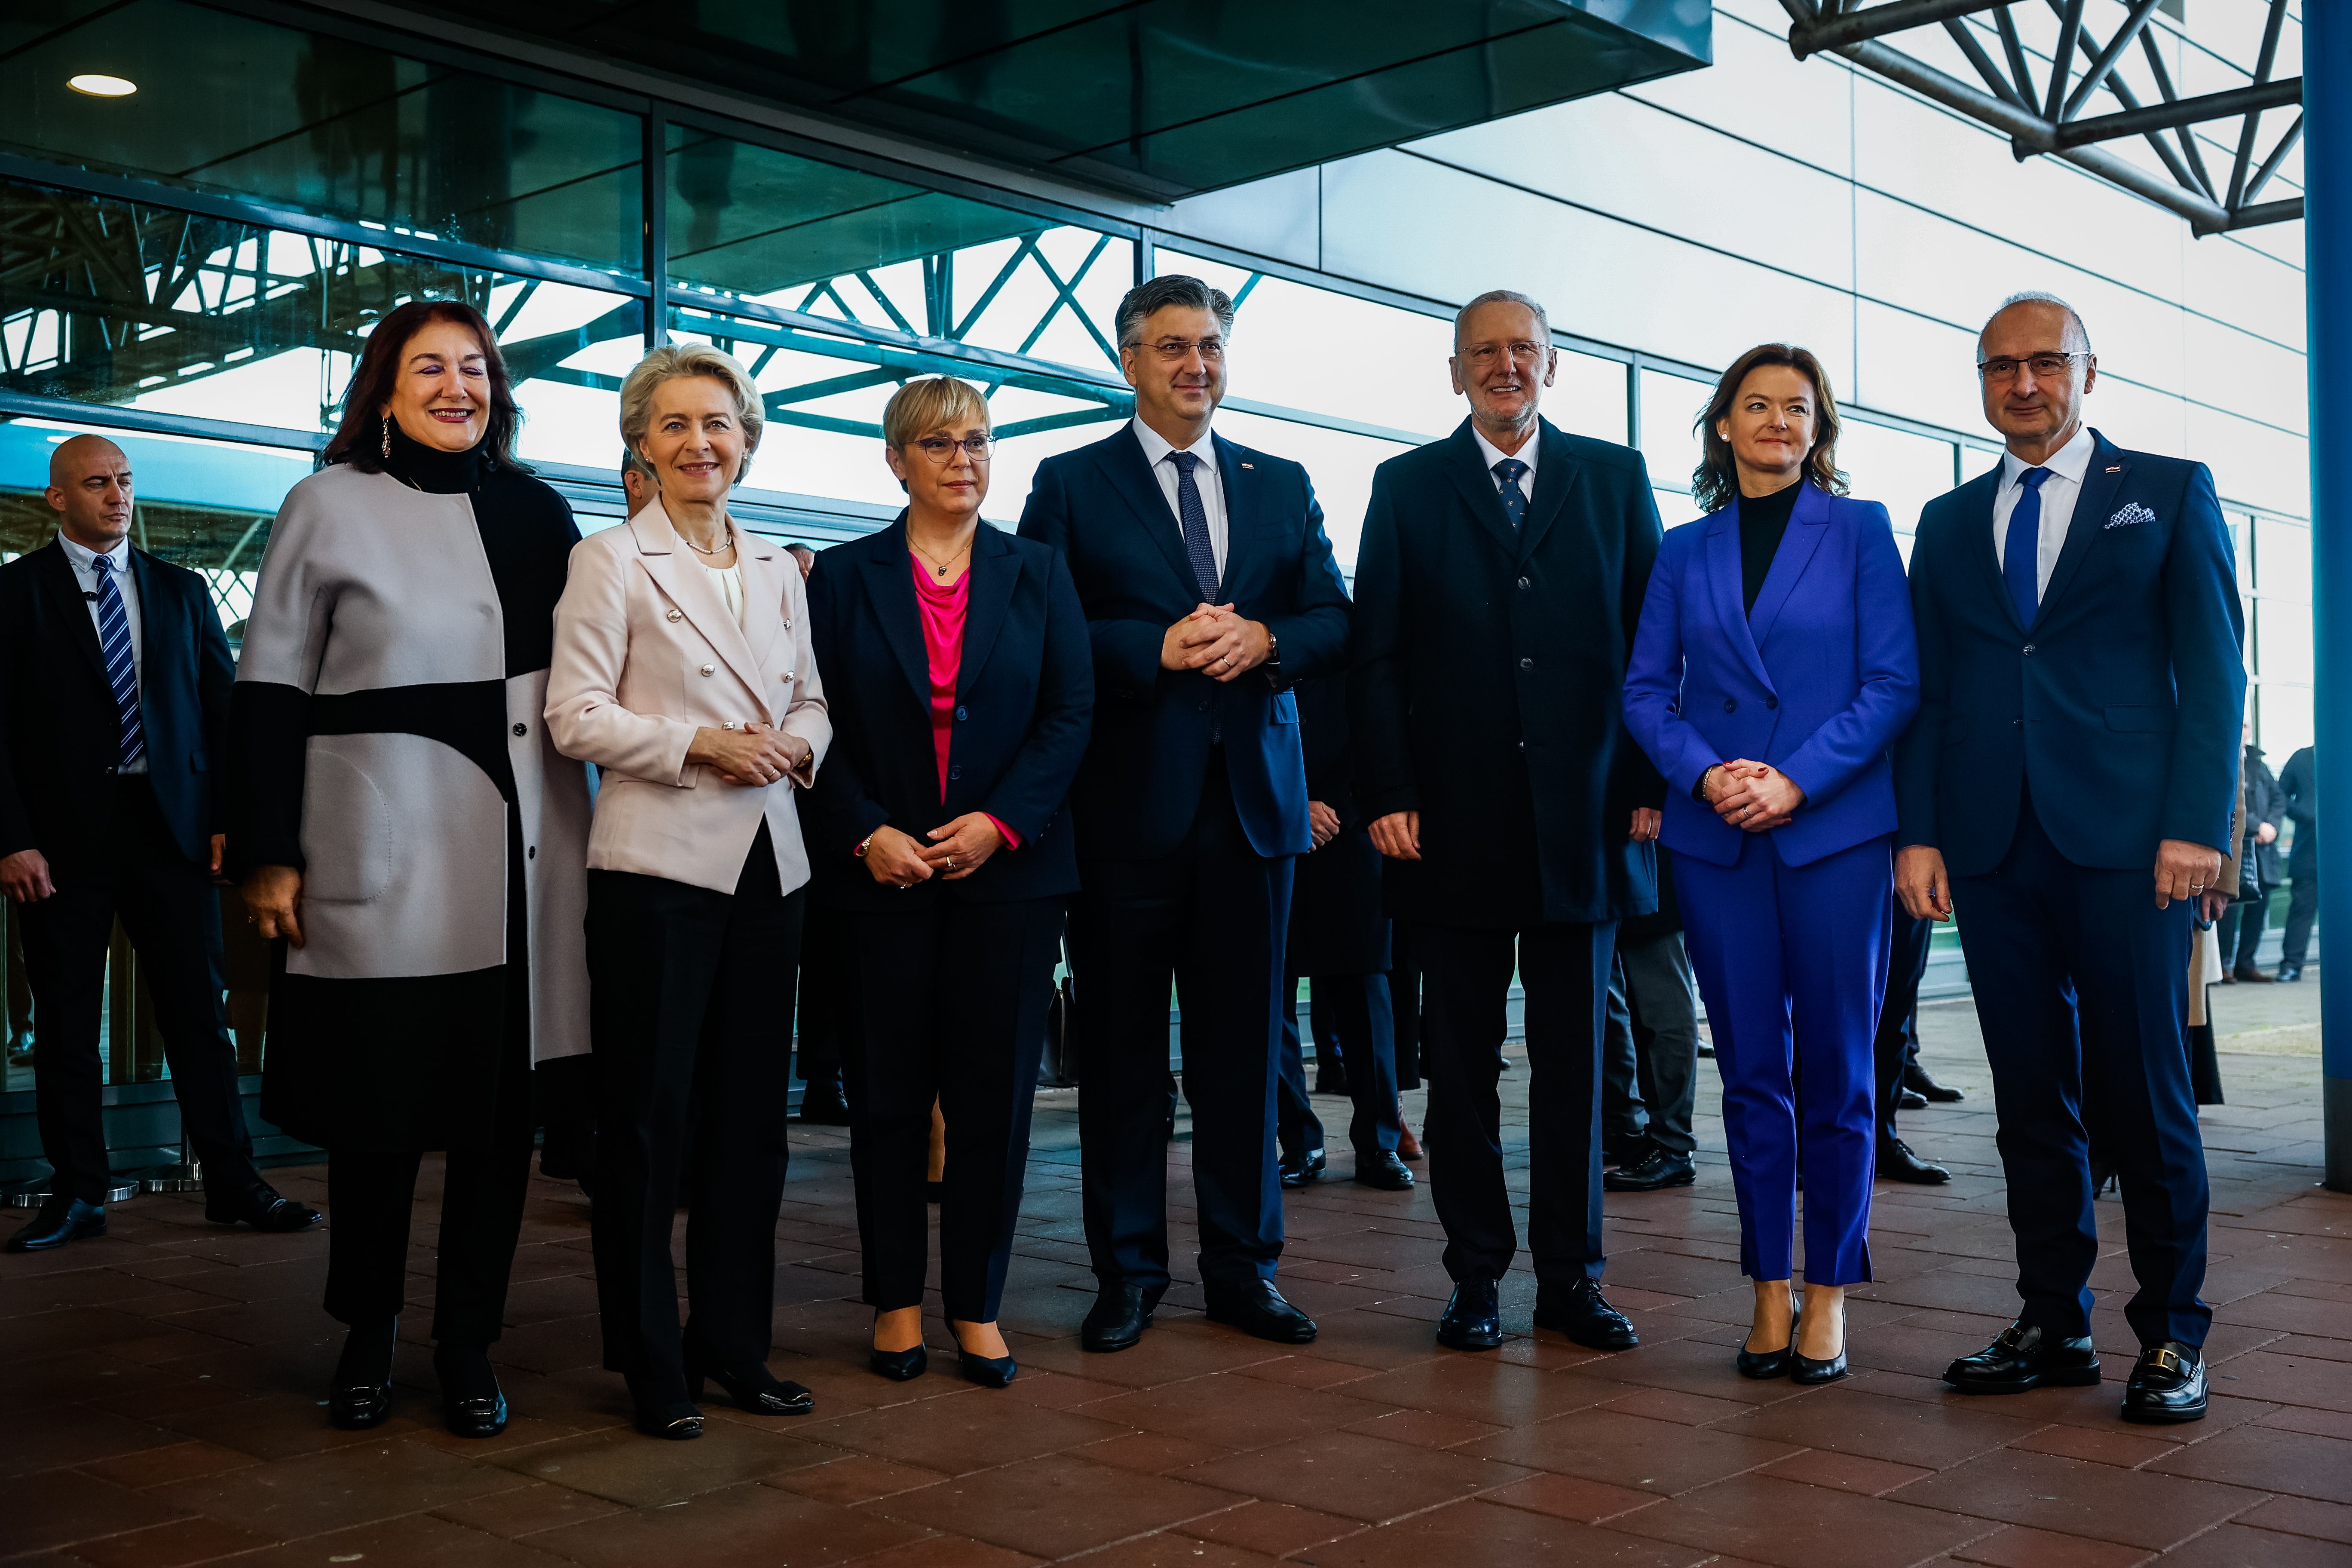 Trilateralno srečanje Republike Slovenije, Republike Hrvaške in Evropske komisije ob vstopu Hrvaške v območje schengen in v evrsko območje